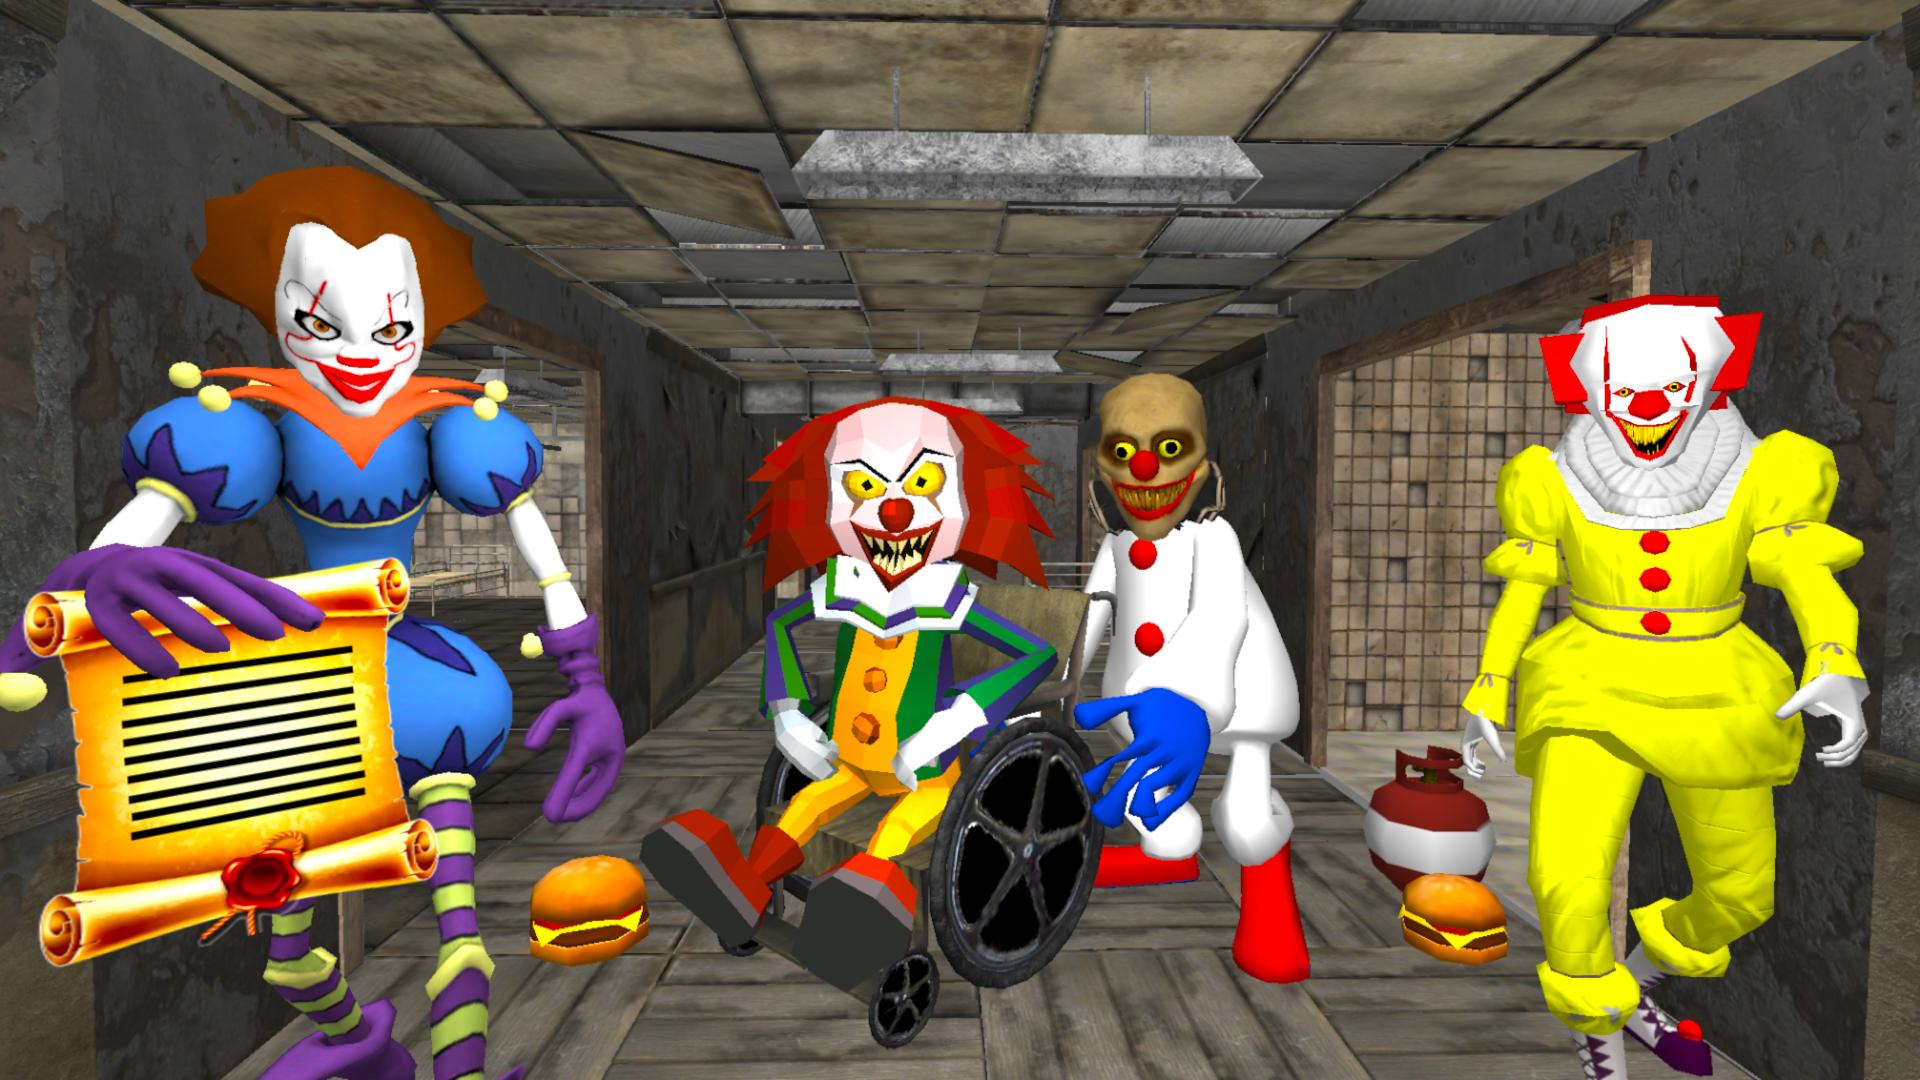 Игры клоун 1. Клоун госпиталь нейбор Эскейп 3 д. Клоун сосед Эскейп. Сосед клоун нейбор. Clown Hospital Neighbor Escape 3d клоун.